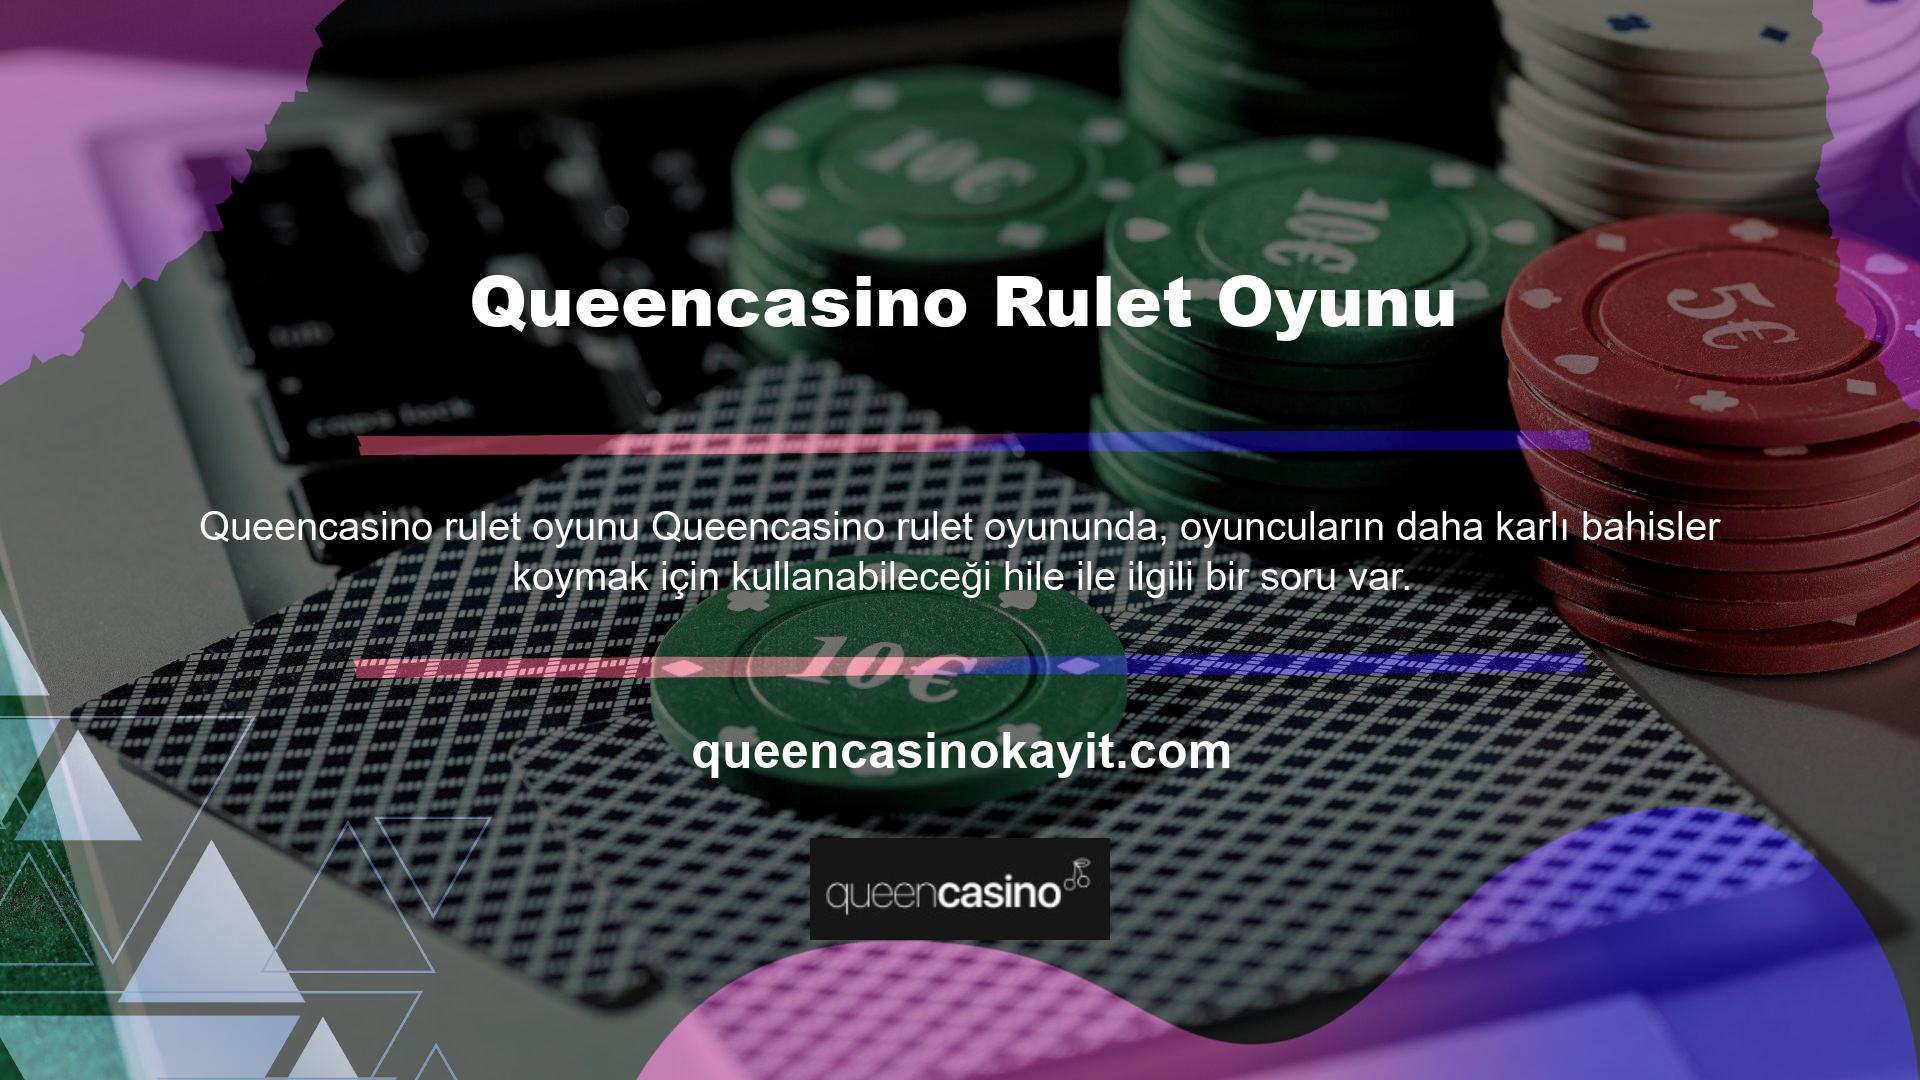 Kullanıcılar Queencasino pokerinde güvenle bahis oynayabilirler